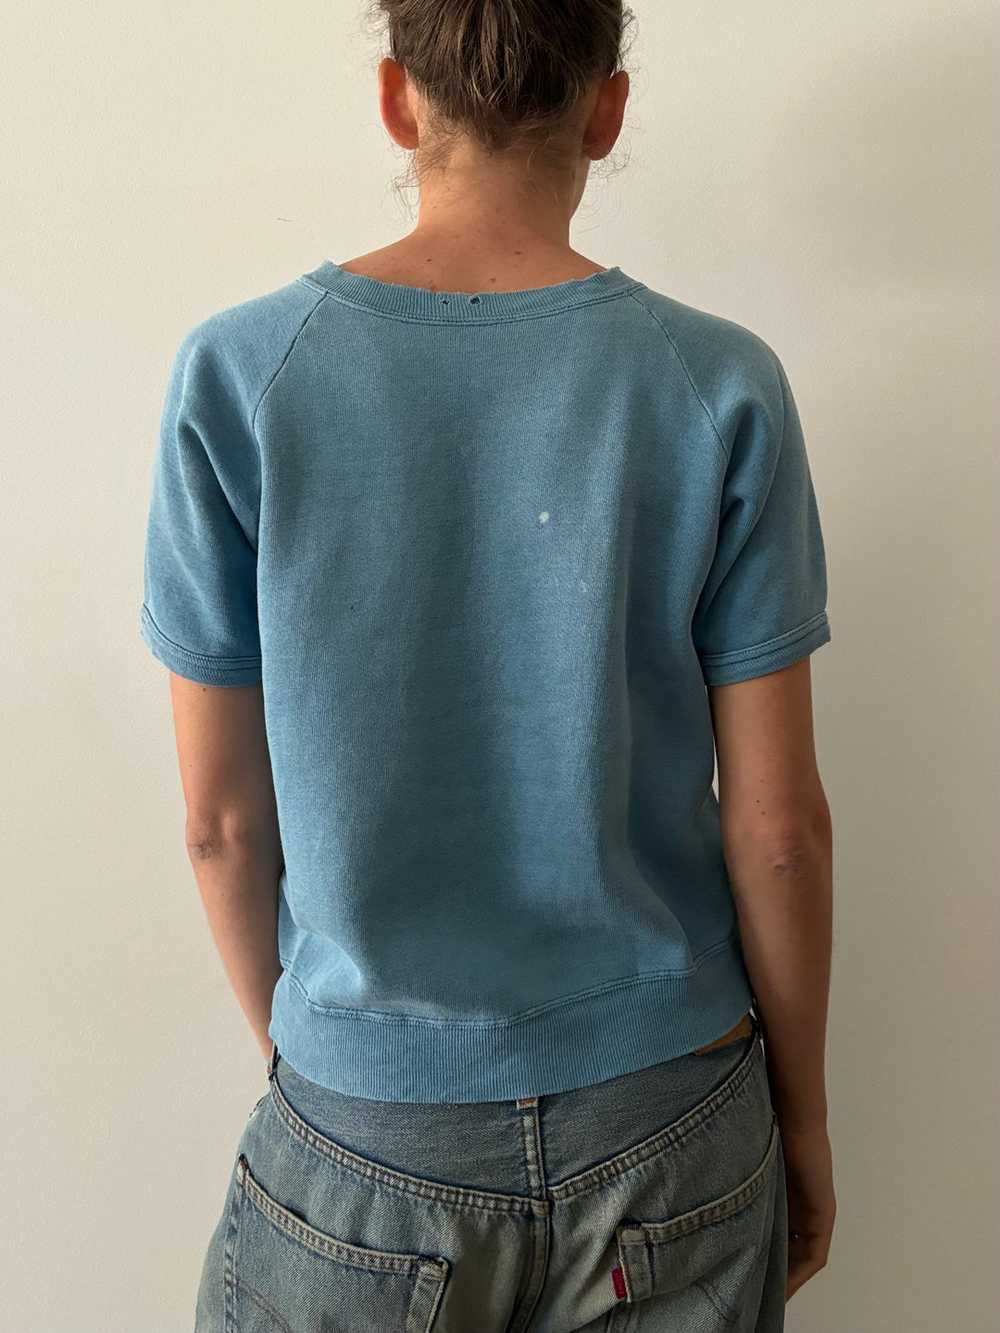 60s Blue Faded Short Sleeve Sweatshirt tee - image 2